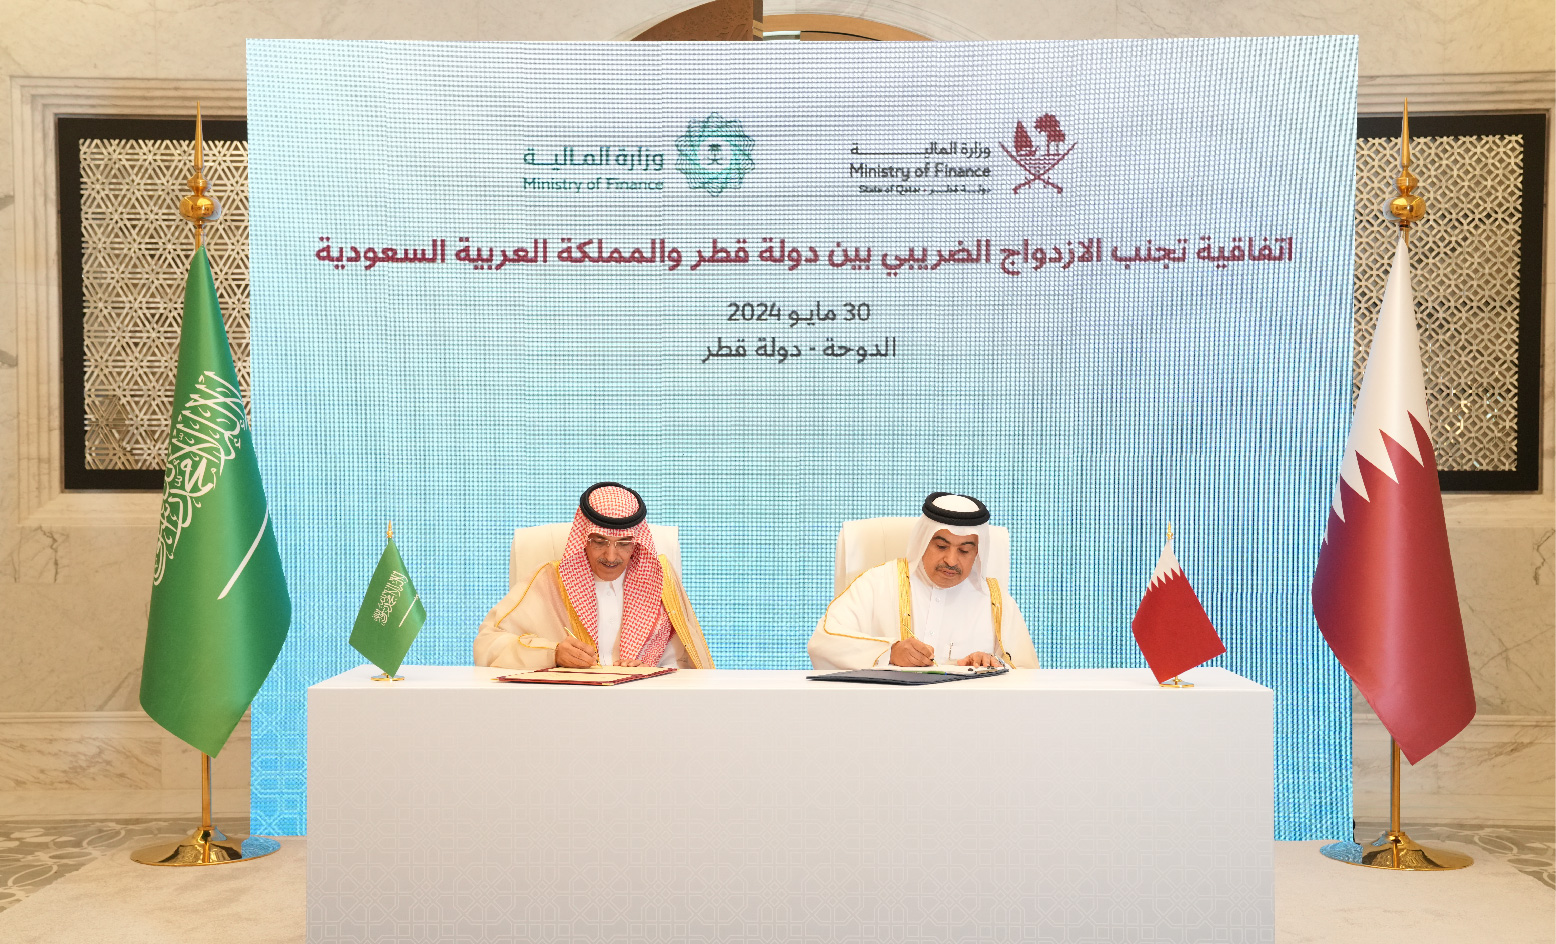 دولة قطر توقع اتفاقية بشأن تجنب الازدواج الضريبي مع المملكة العربية السعودية